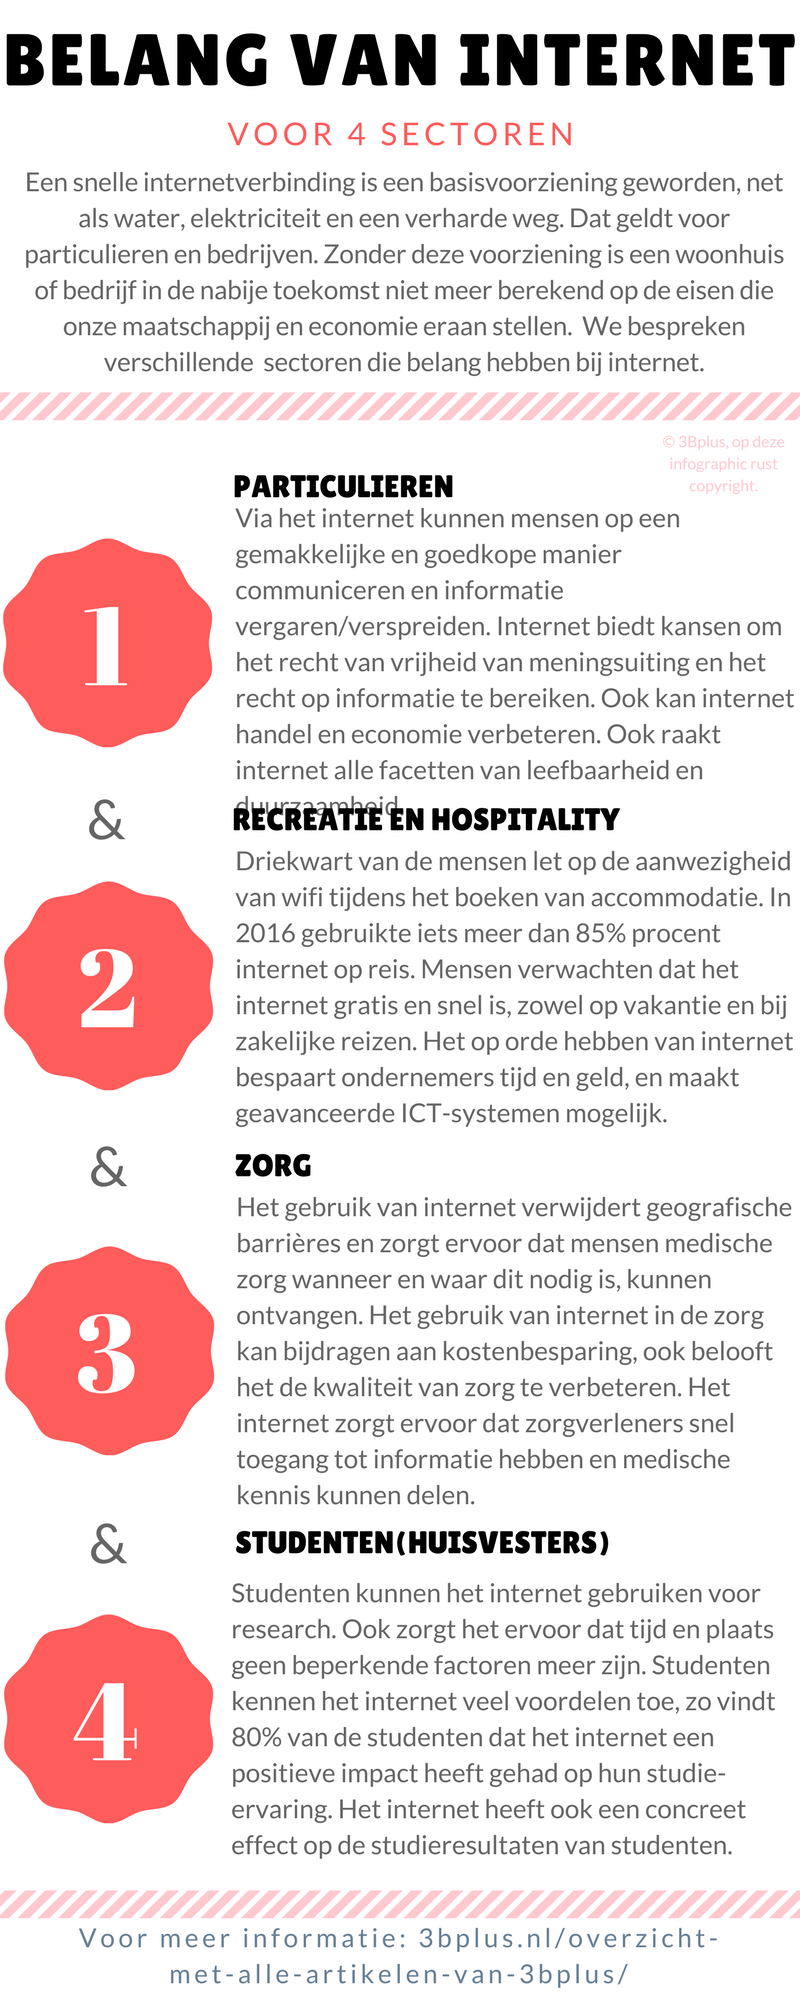 Infographic: het belang van internet voor vier sectoren